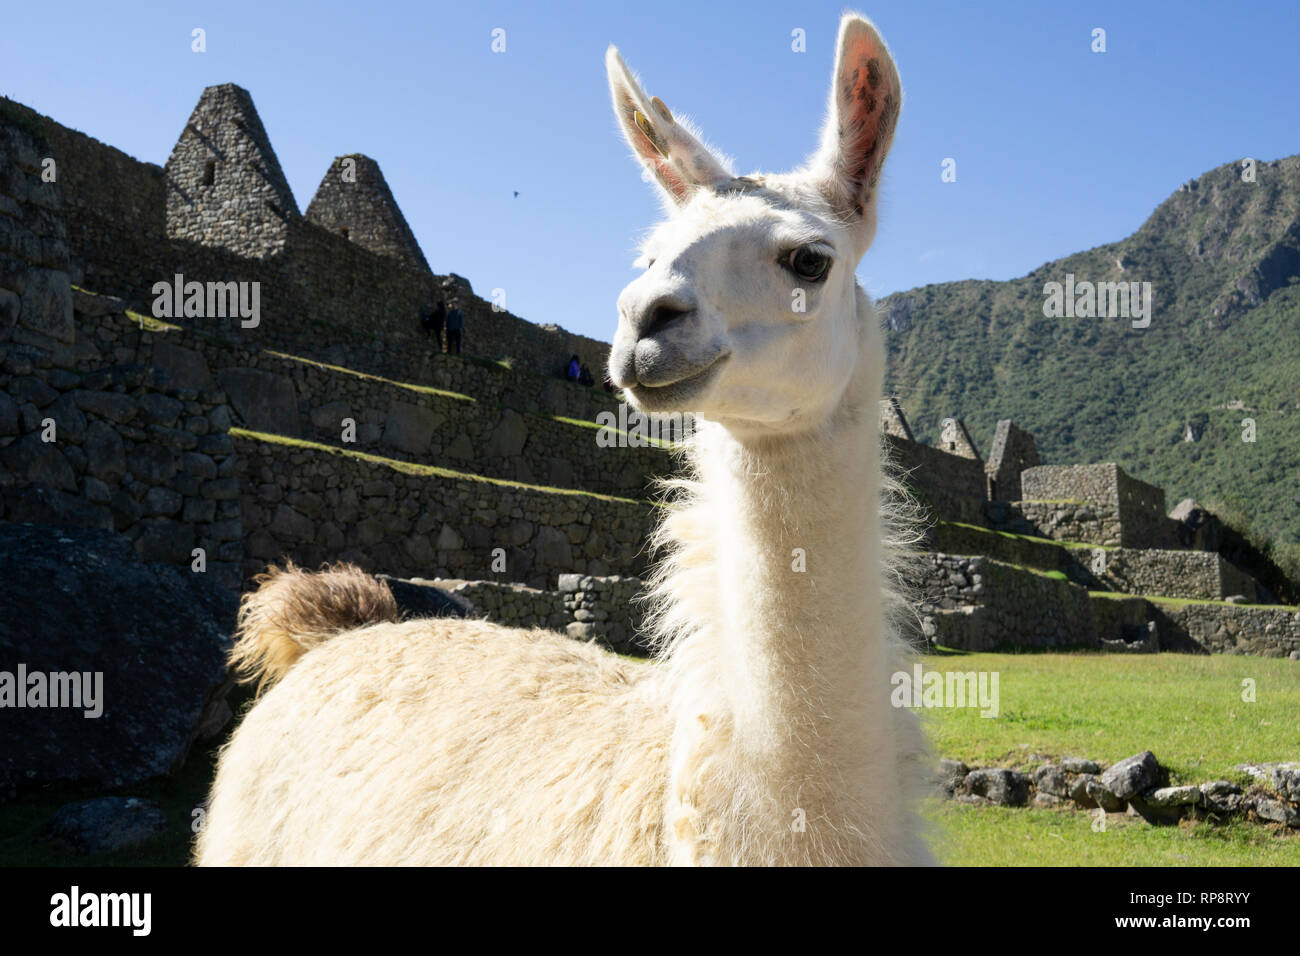 Llama in front of ancient Incan ruins in Macchu Pichu, Peru. Stock Photo